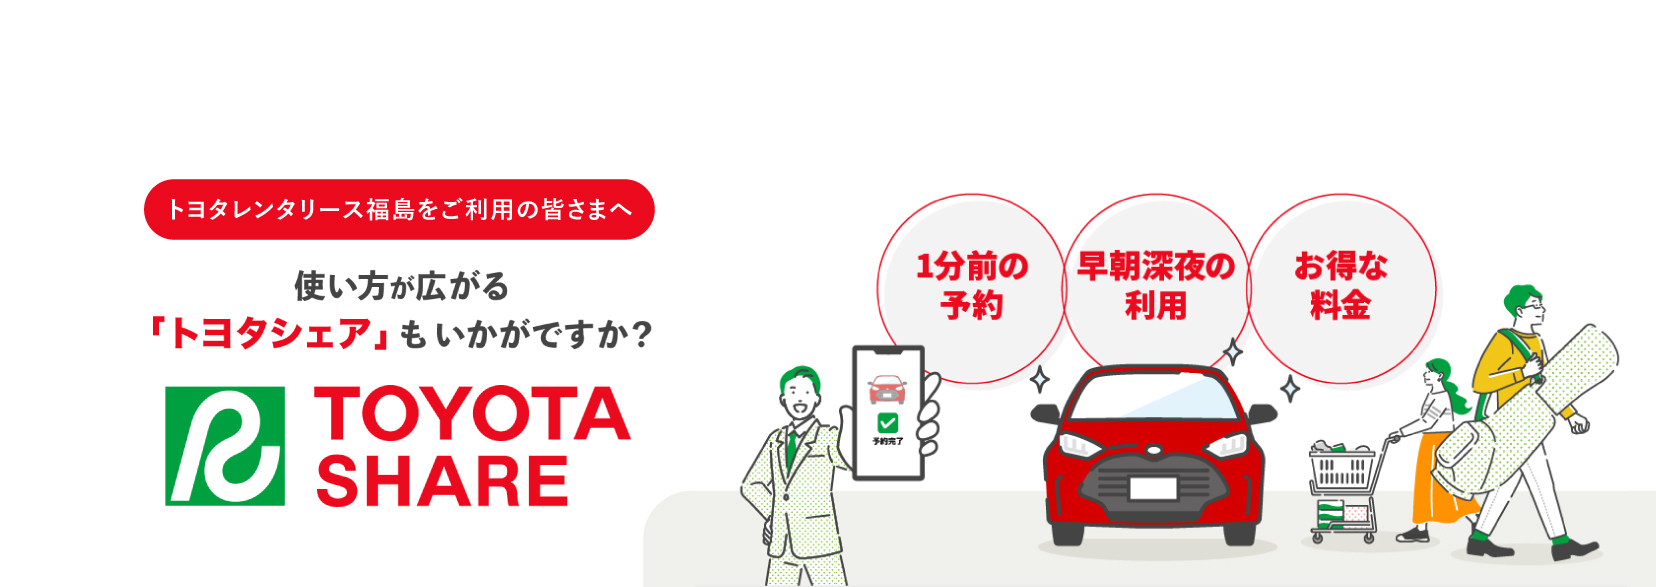 トヨタのカーシェアサービス TOYOTA SHARE